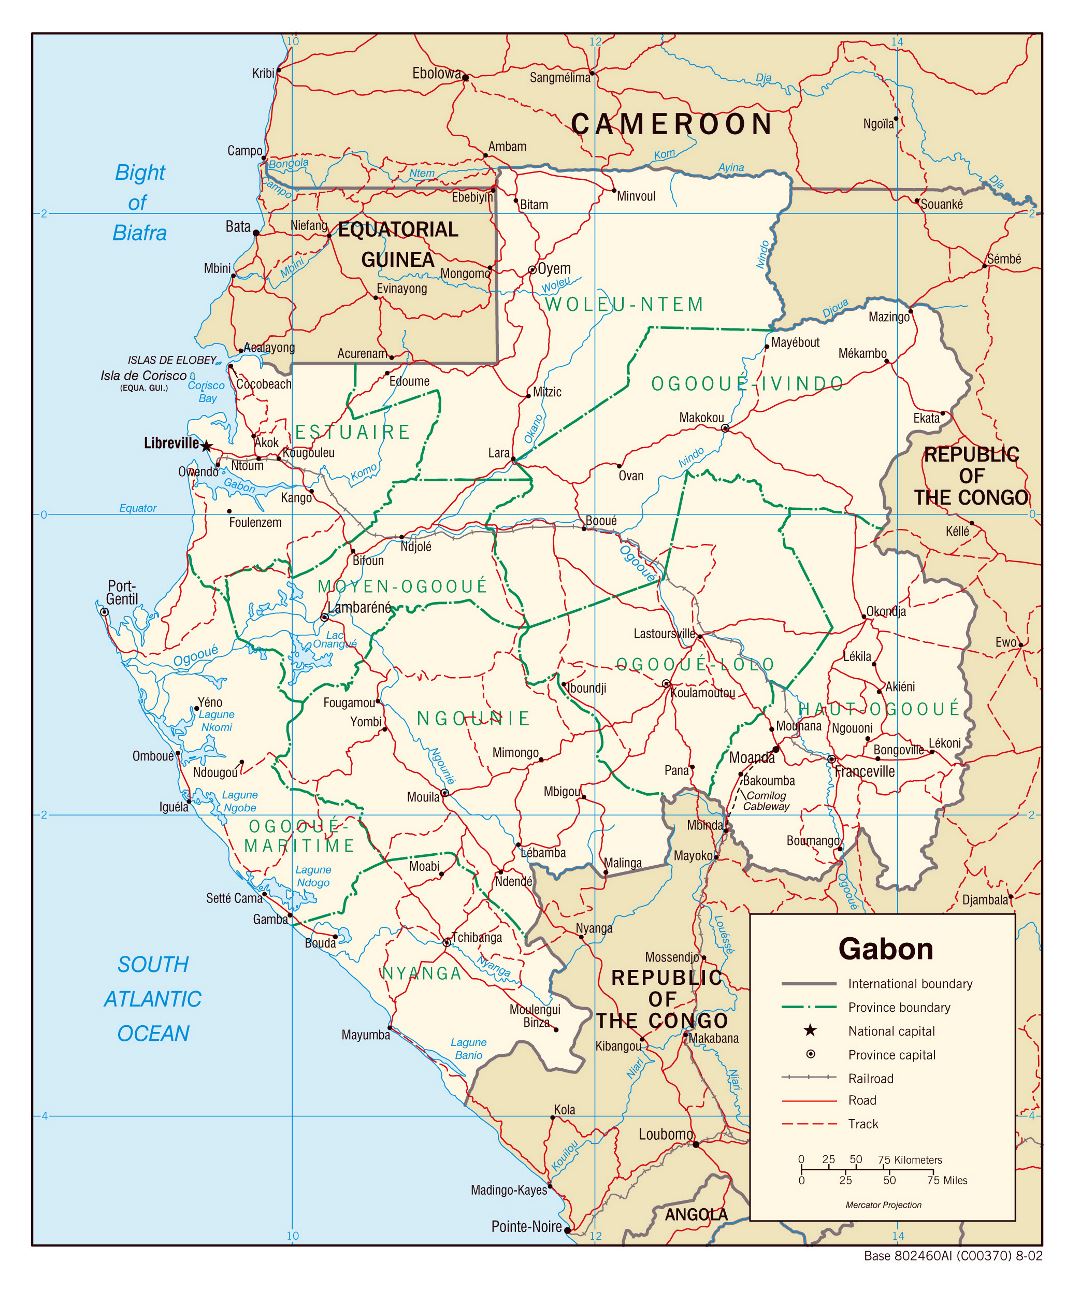 Большая детальная политическая и административная карта Габона с дорогами, железными дорогами и крупными городами - 2002